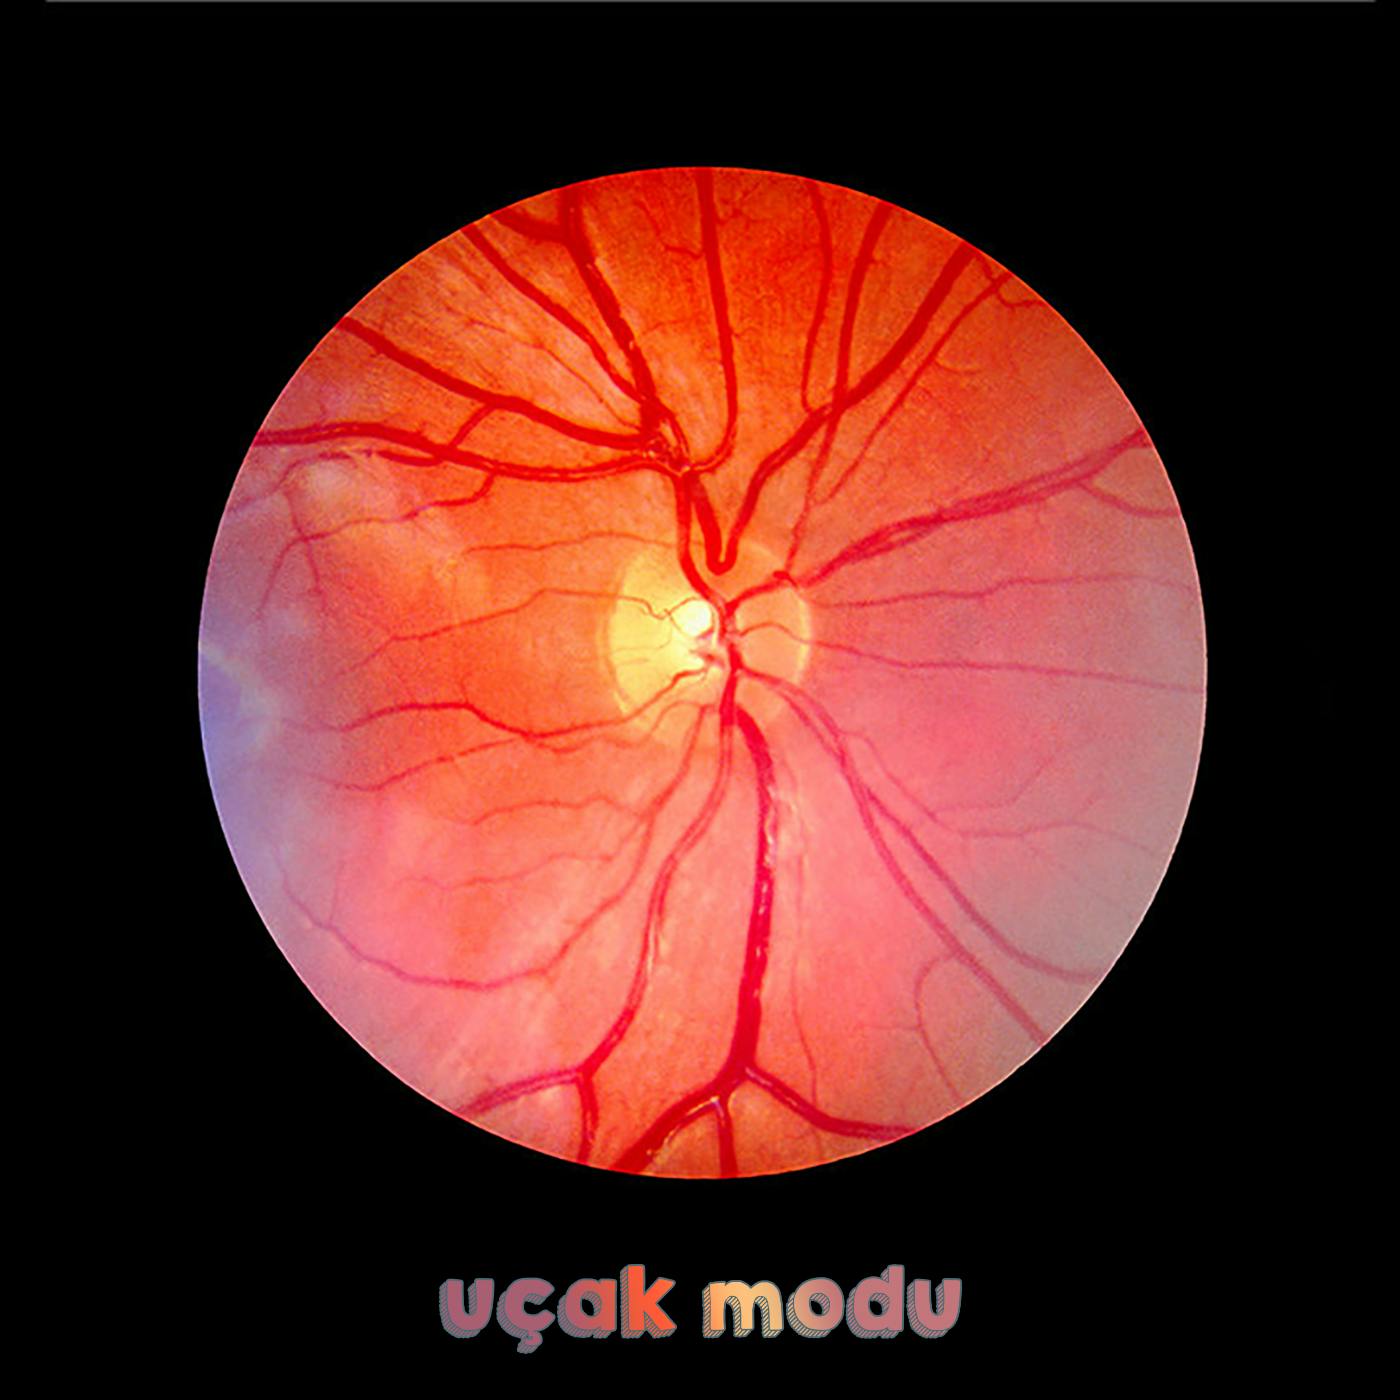 Yapay Zeka, Retina Hastalıklarında Nasıl Kullanılıyor? #11